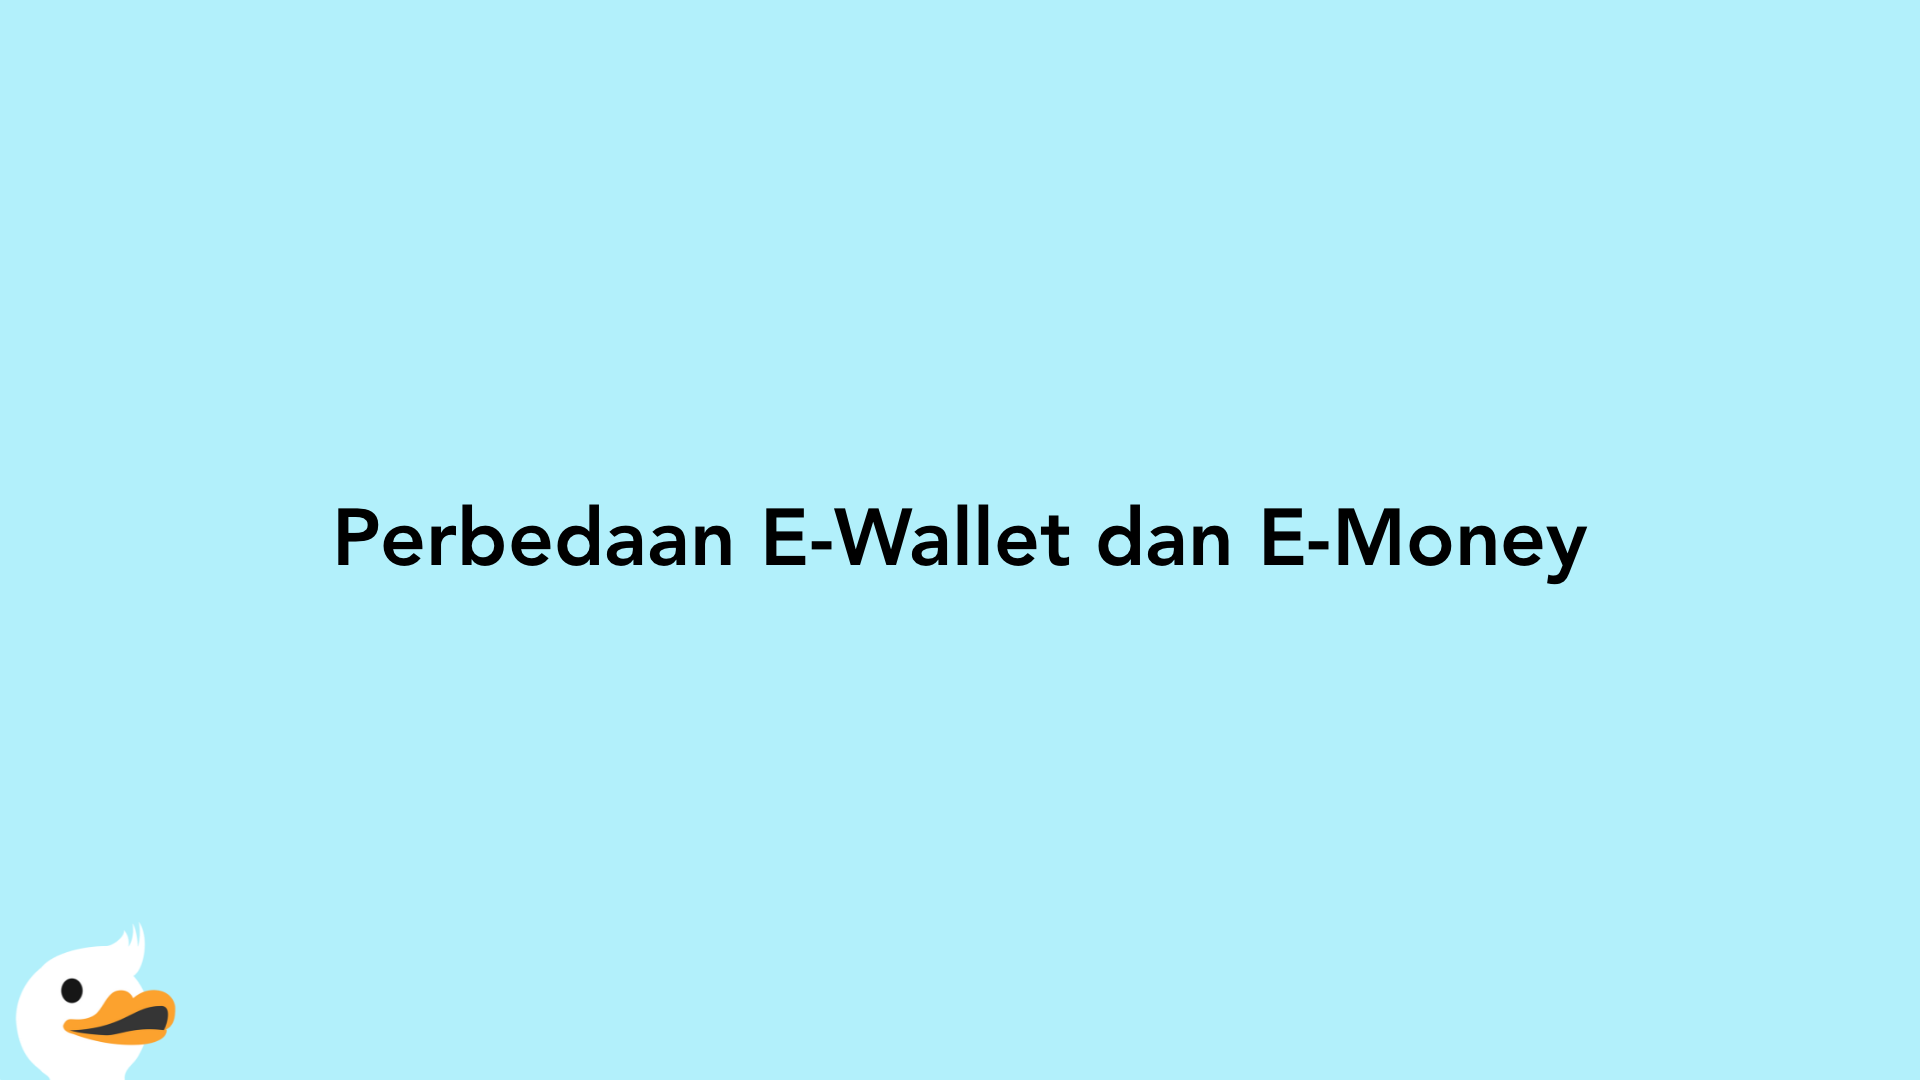 Perbedaan E-Wallet dan E-Money